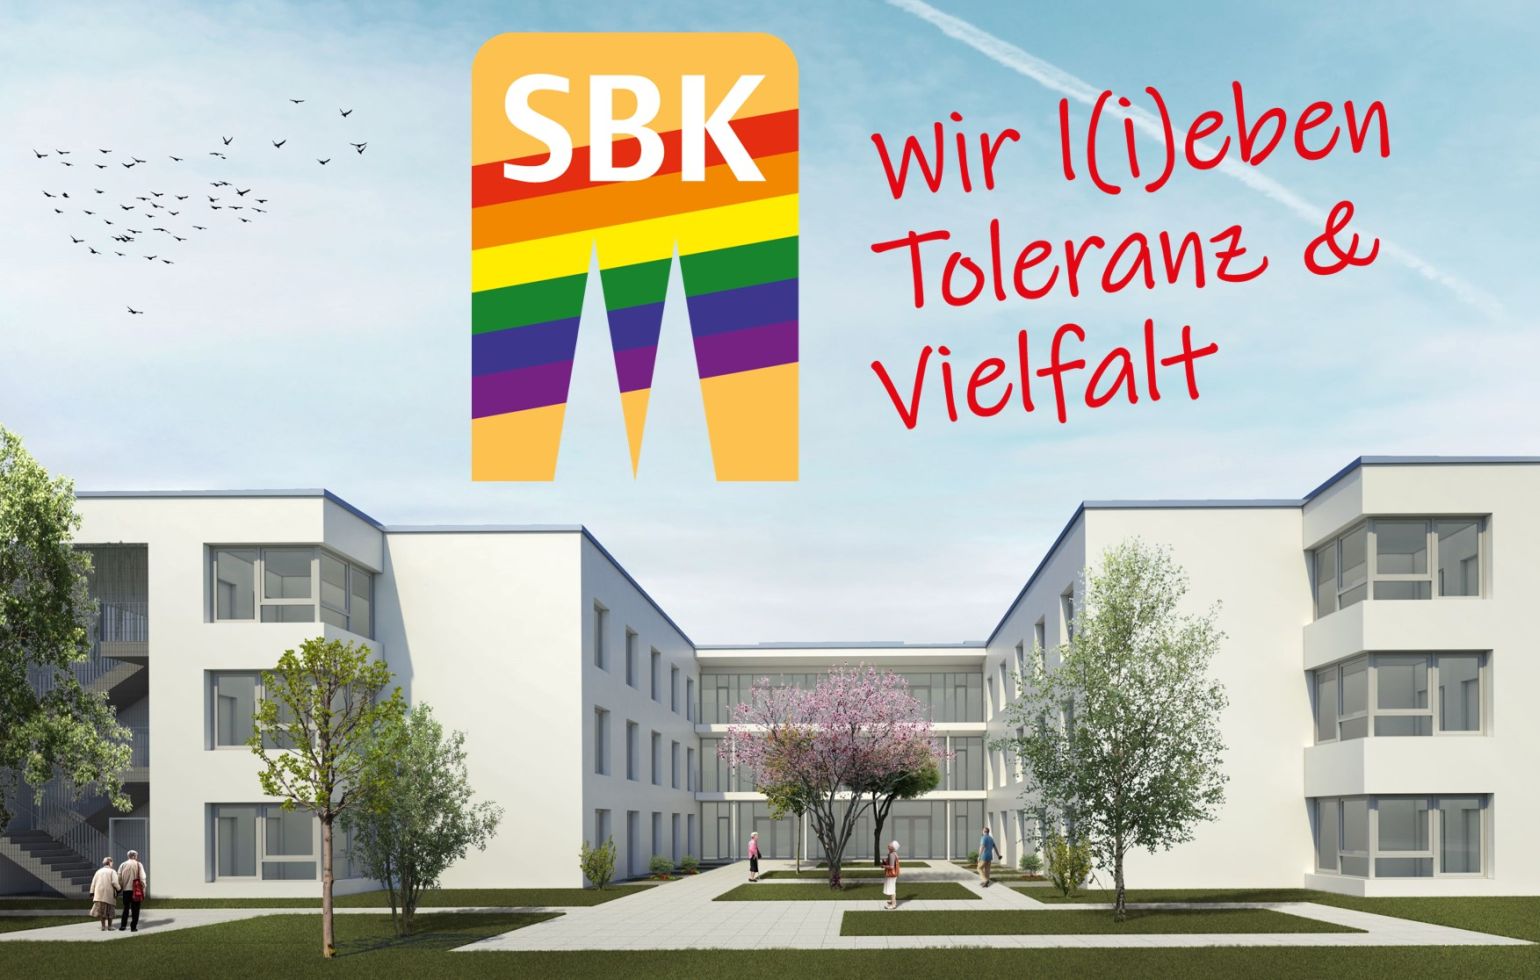 Darstellung des zukünftigen Haus 8 und das SBK-Logo mit dem Zusatz "Wir lieben und leben Toleranz und Vielfalt!"